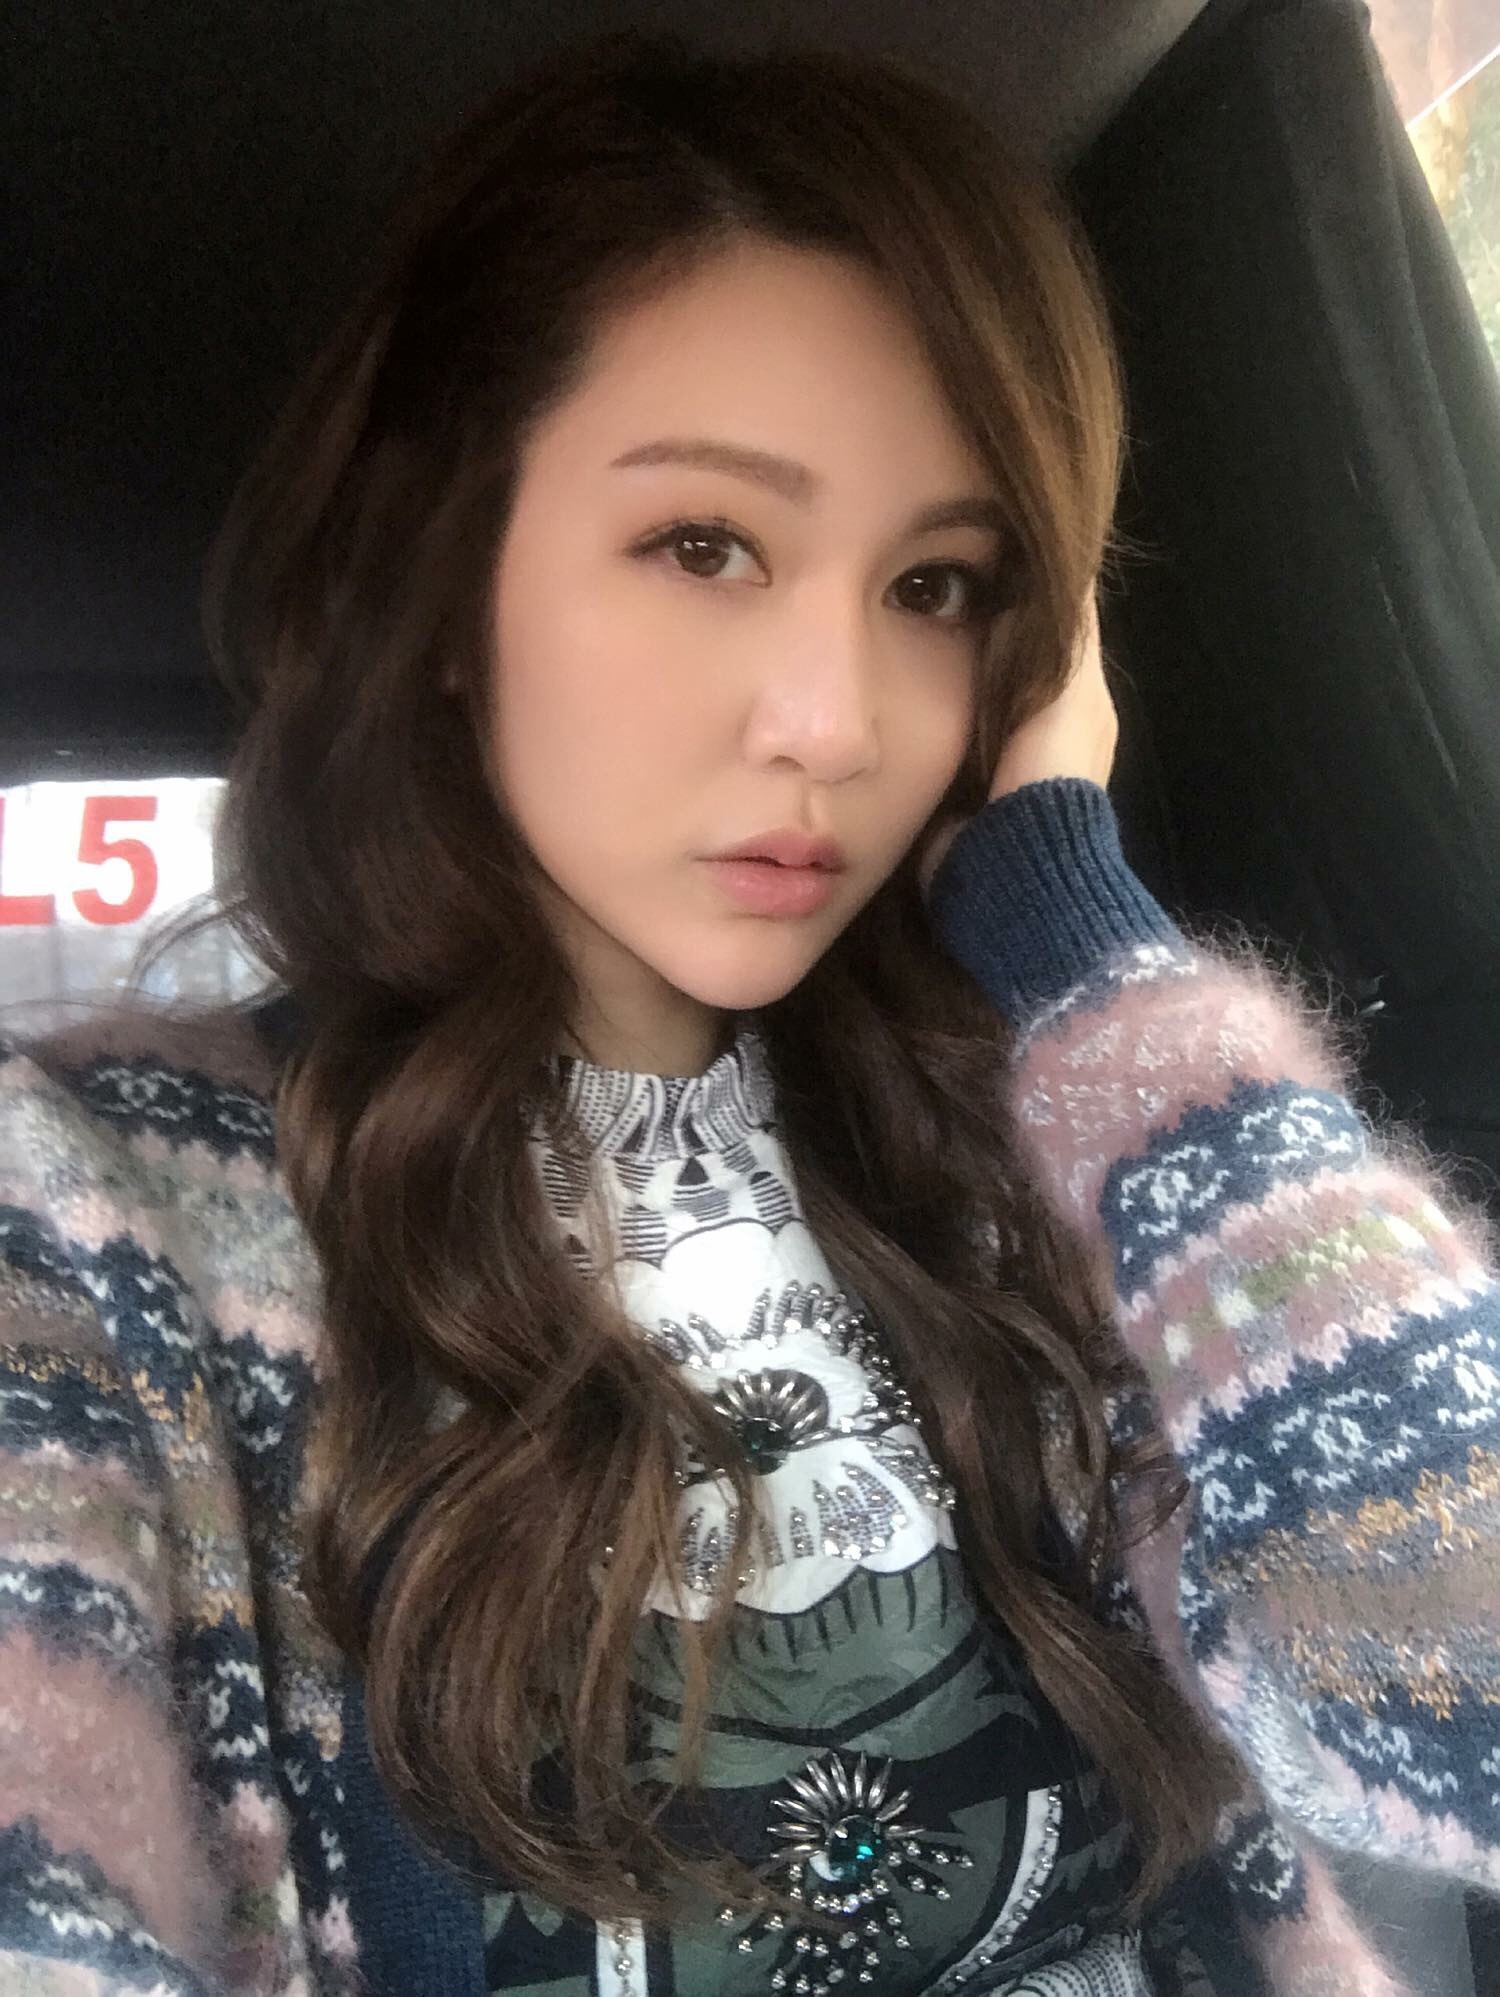 可爱美少女GNZ48-朱怡欣自拍写真美照好美